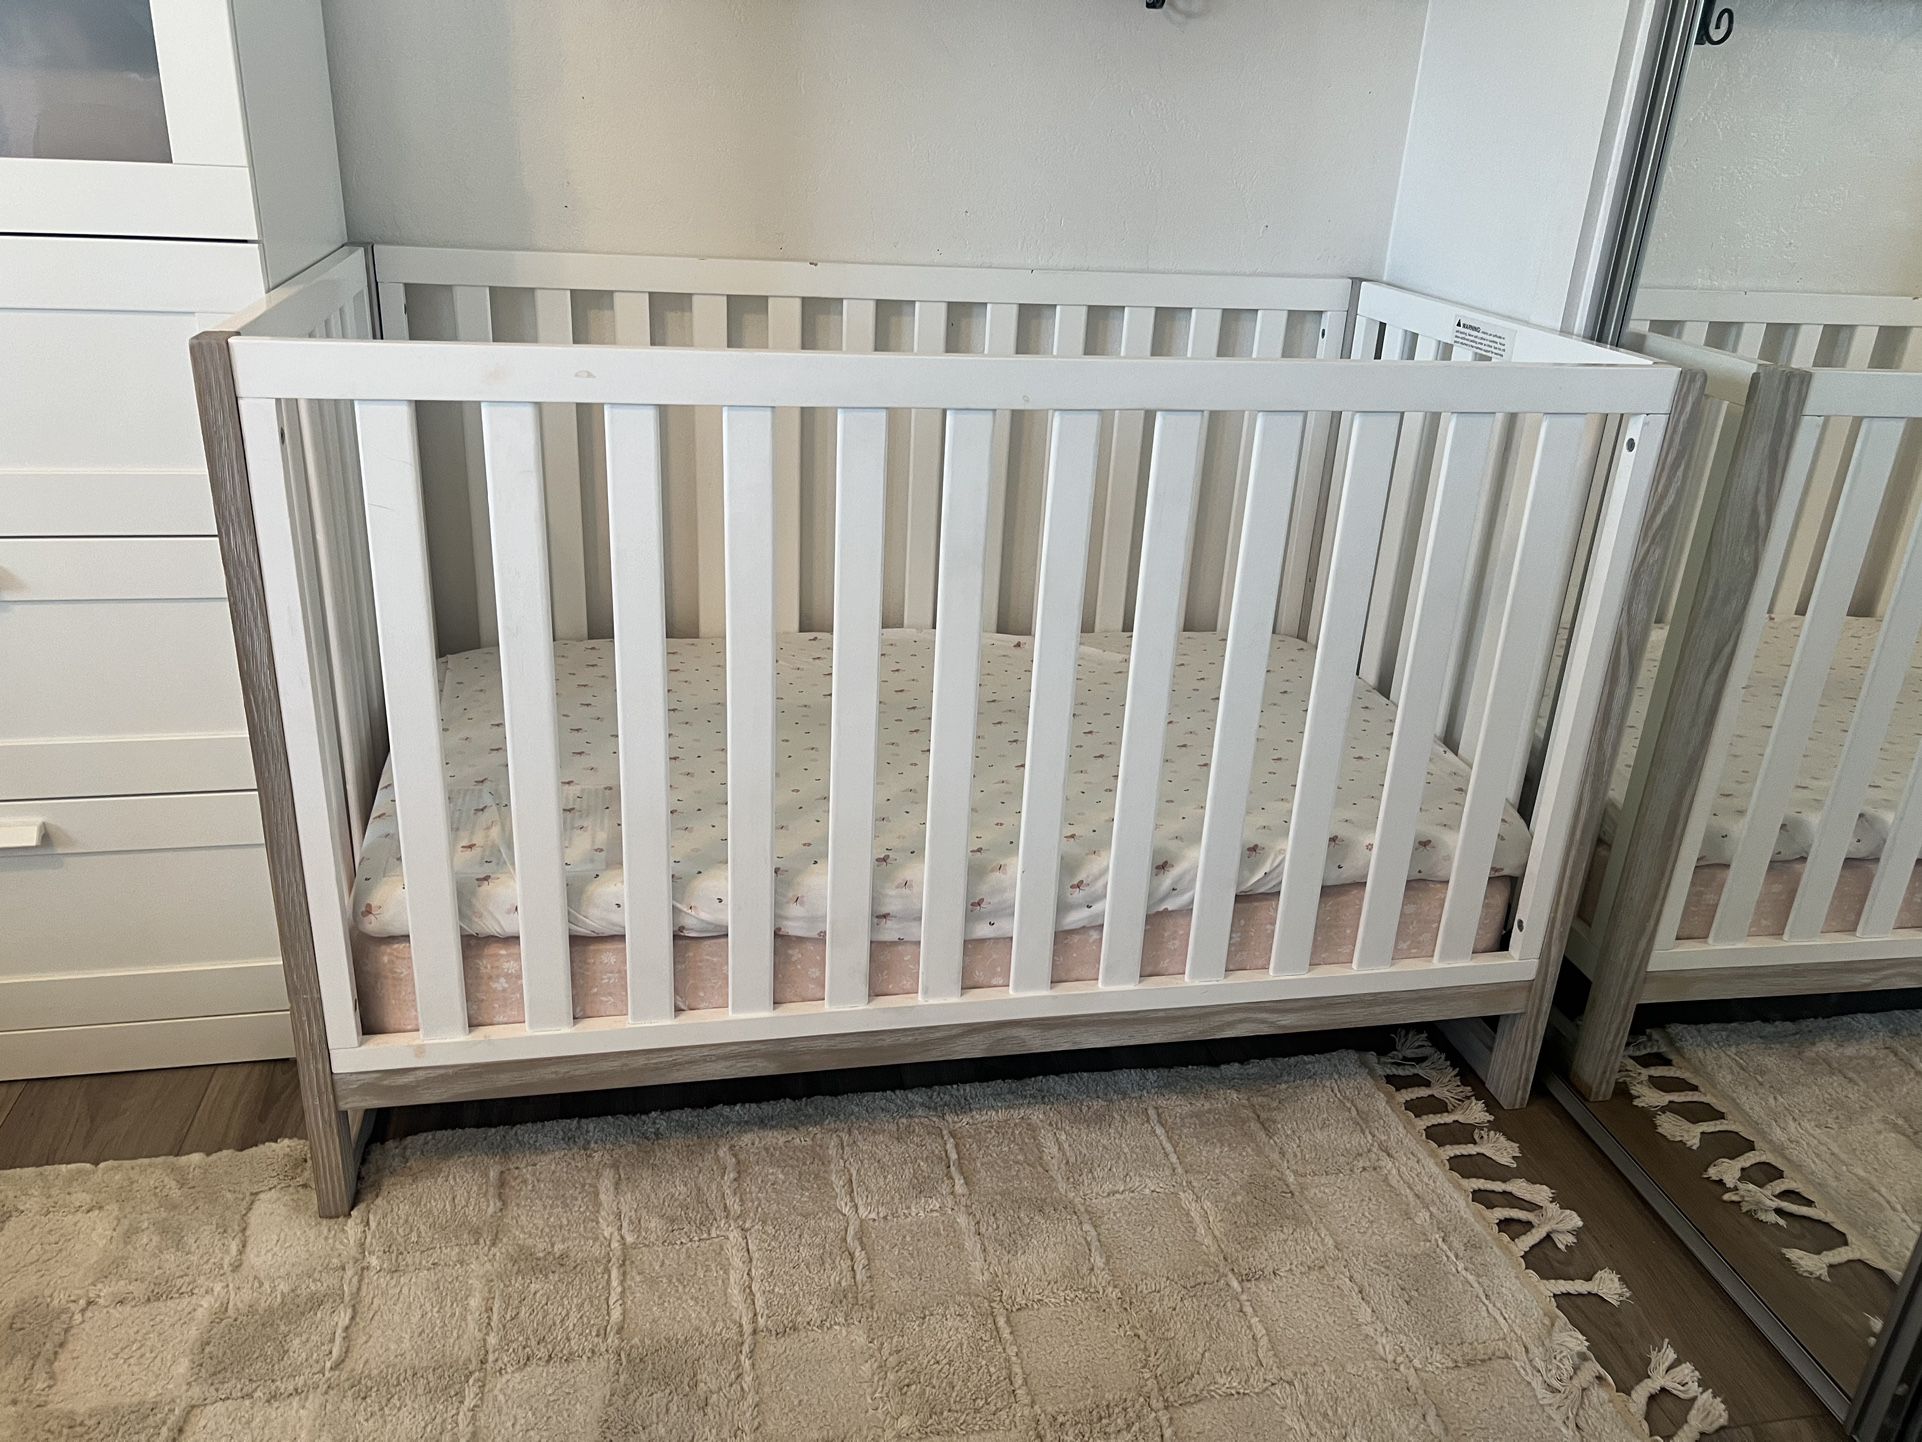 Baby Crib White / Grey Wood Trim 